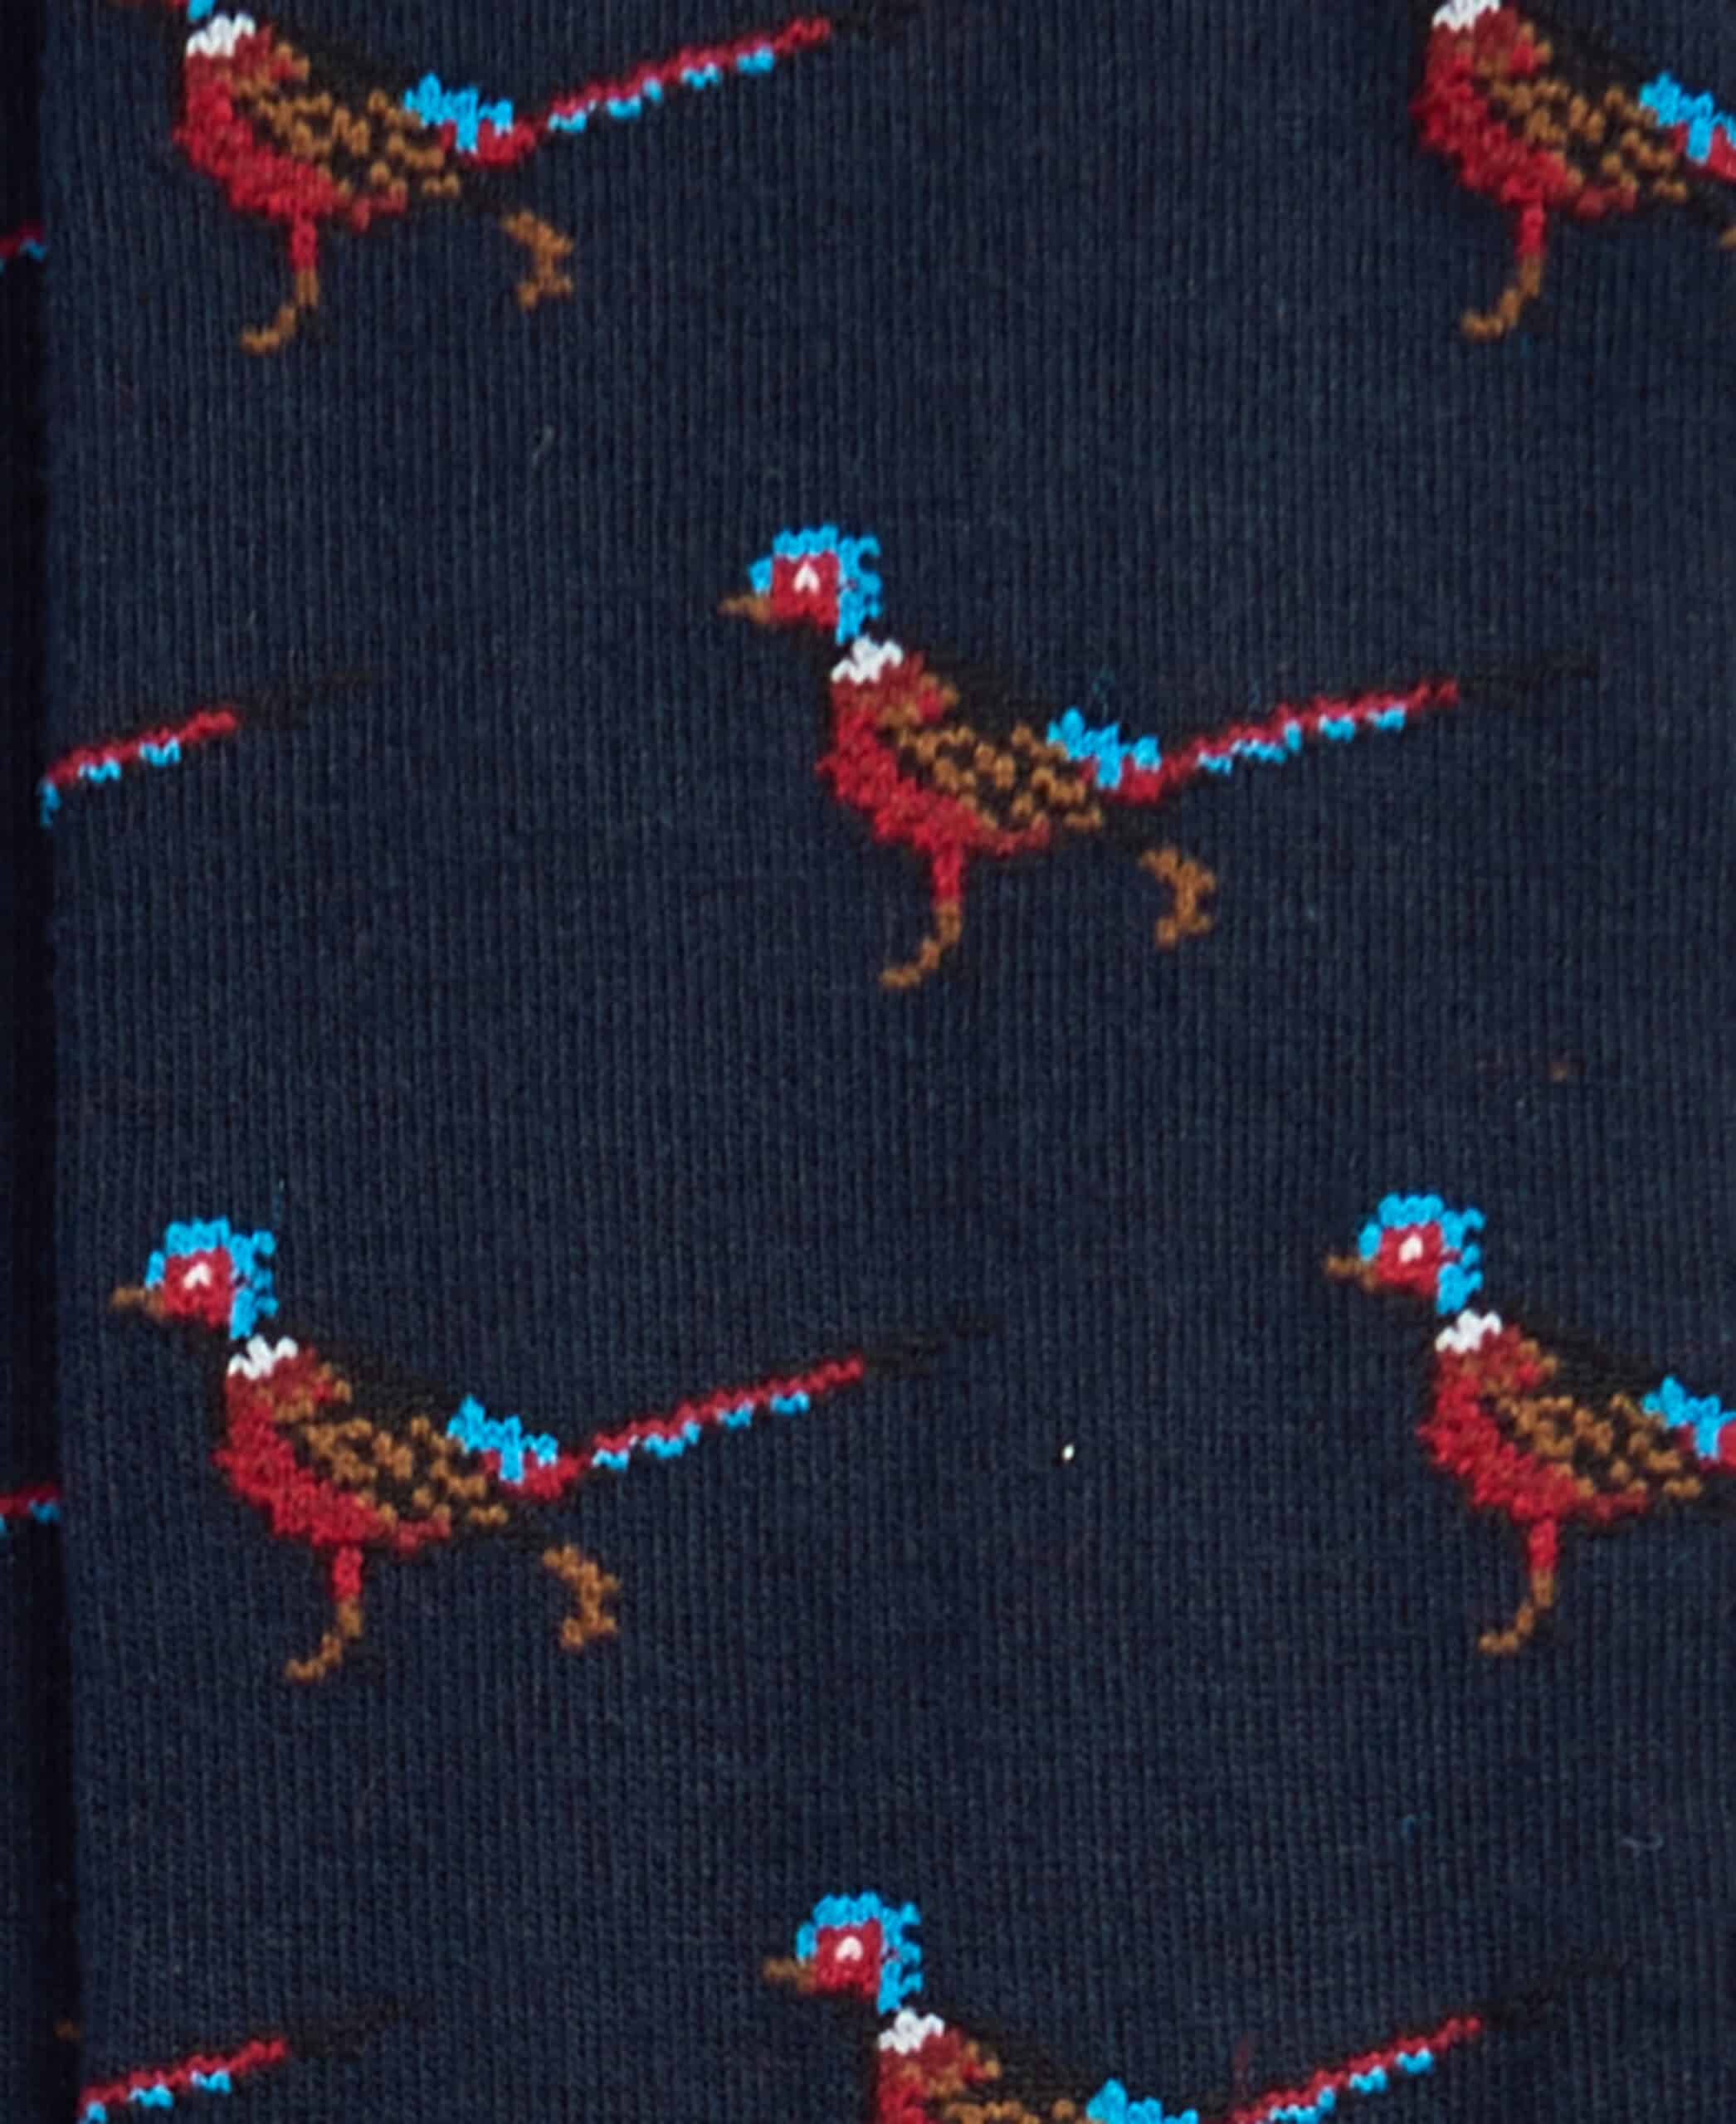 Mavin Socks – Navy Pheasant